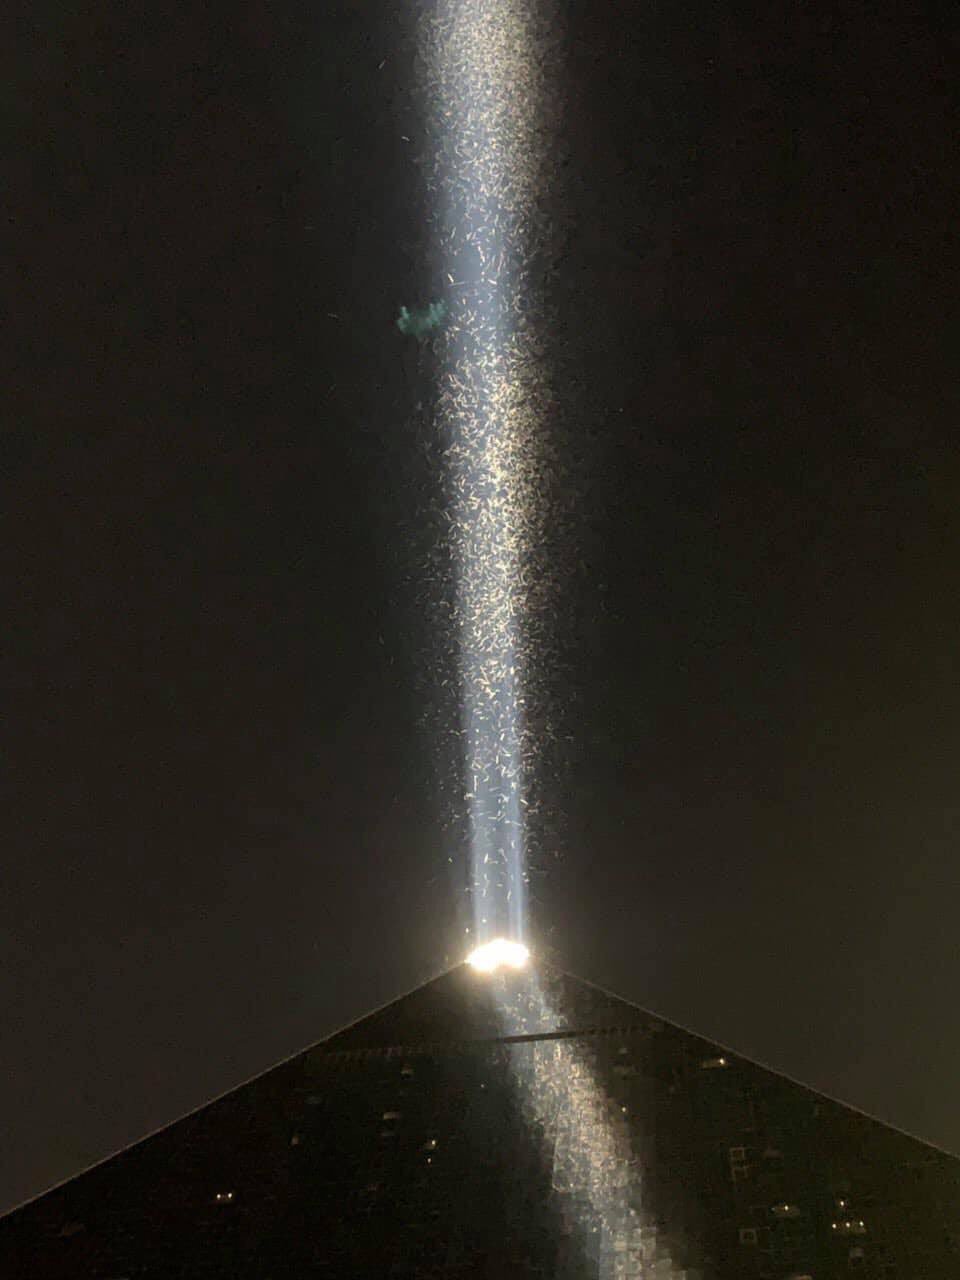 Grasshopper swarm - Luxor sky beam